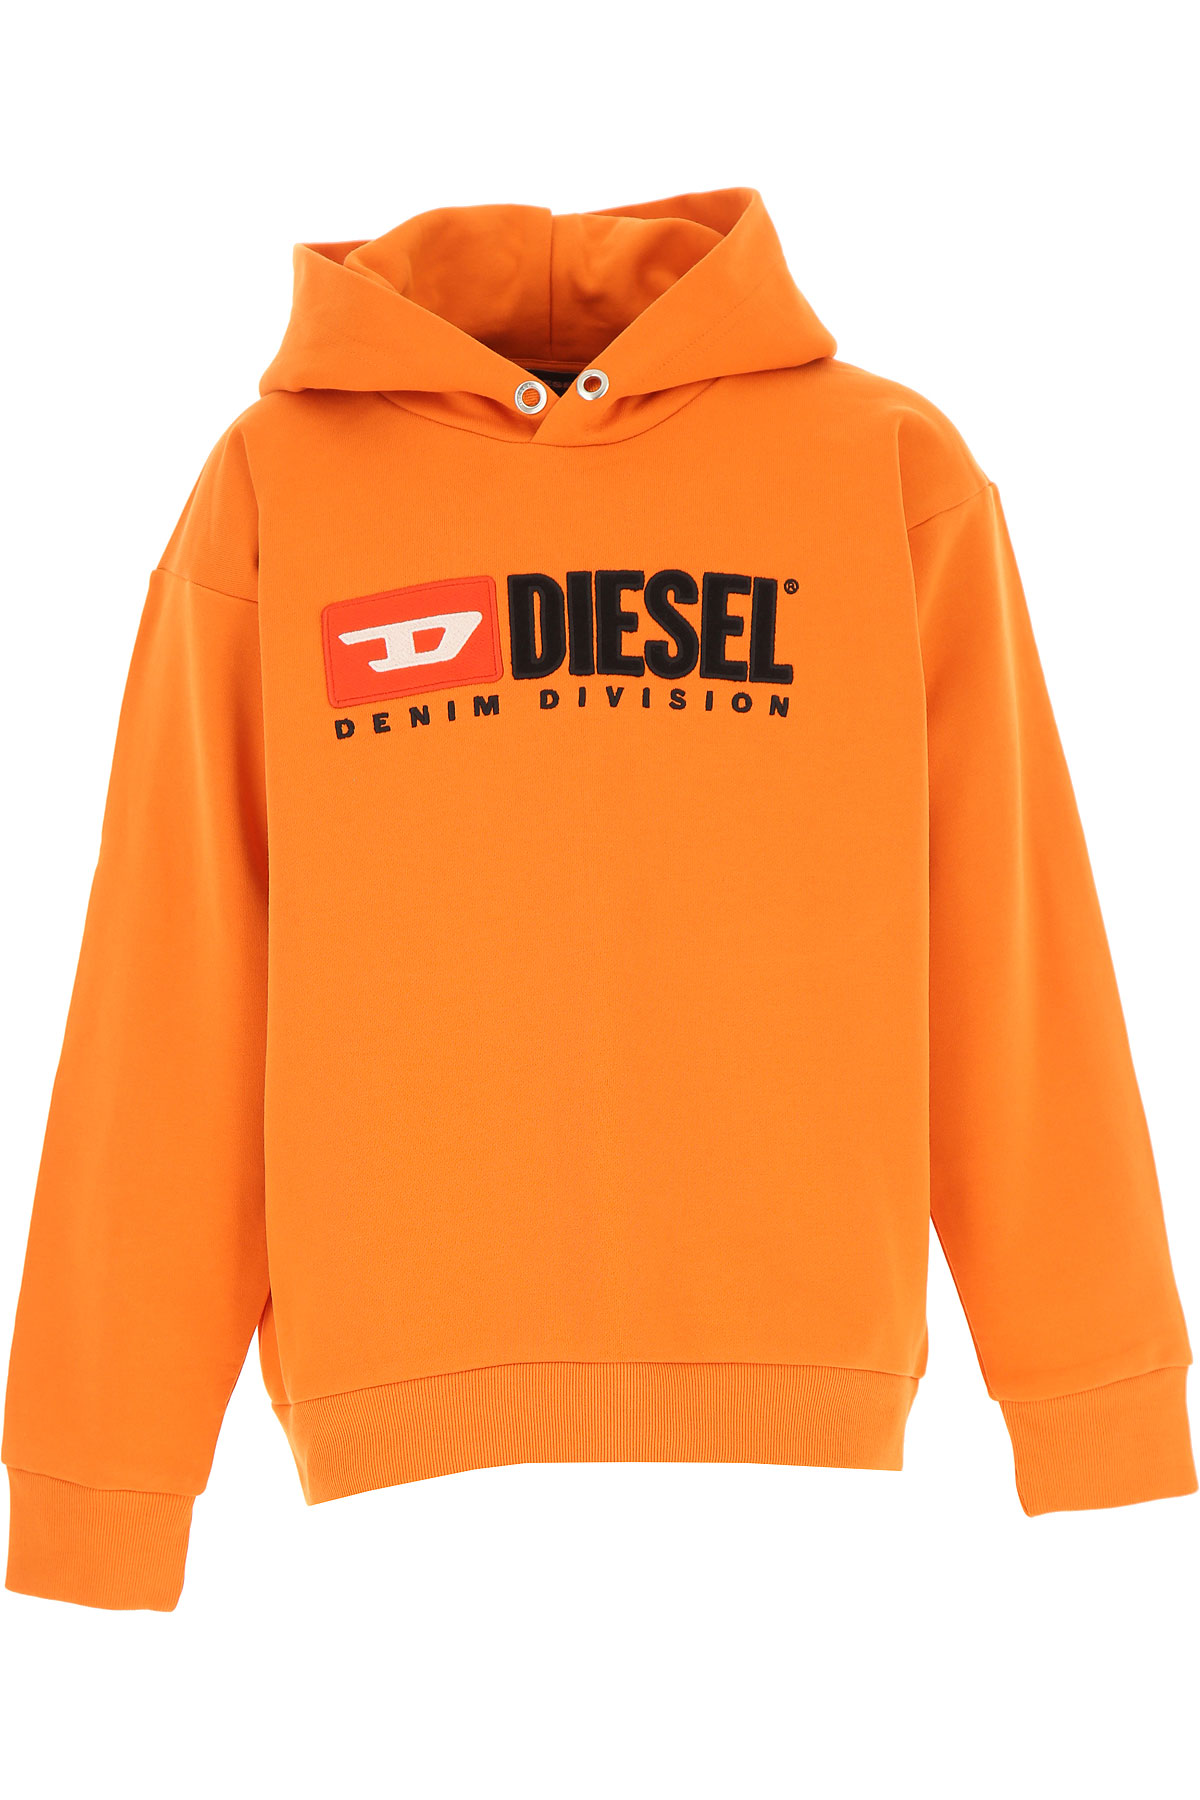 Diesel Kinder Sweatshirt & Kapuzenpullover für Jungen Günstig im Sale, Orange, Baumwolle, 2017, 10Y 14Y 16Y 4Y 6Y 8Y